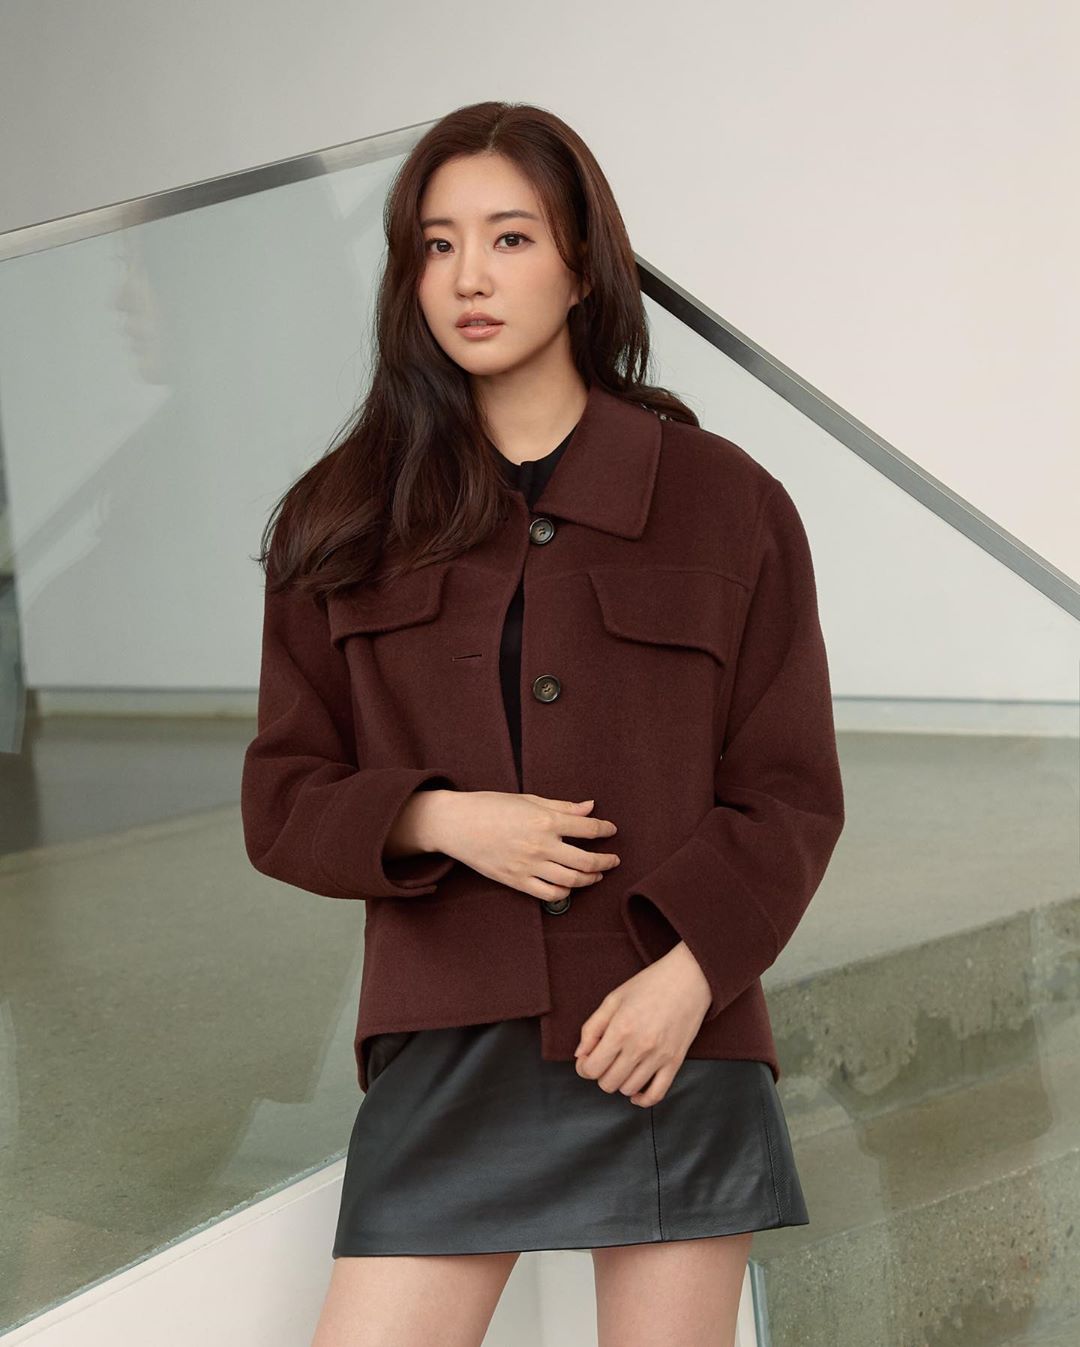 Kim Sa rang south korean actress 8